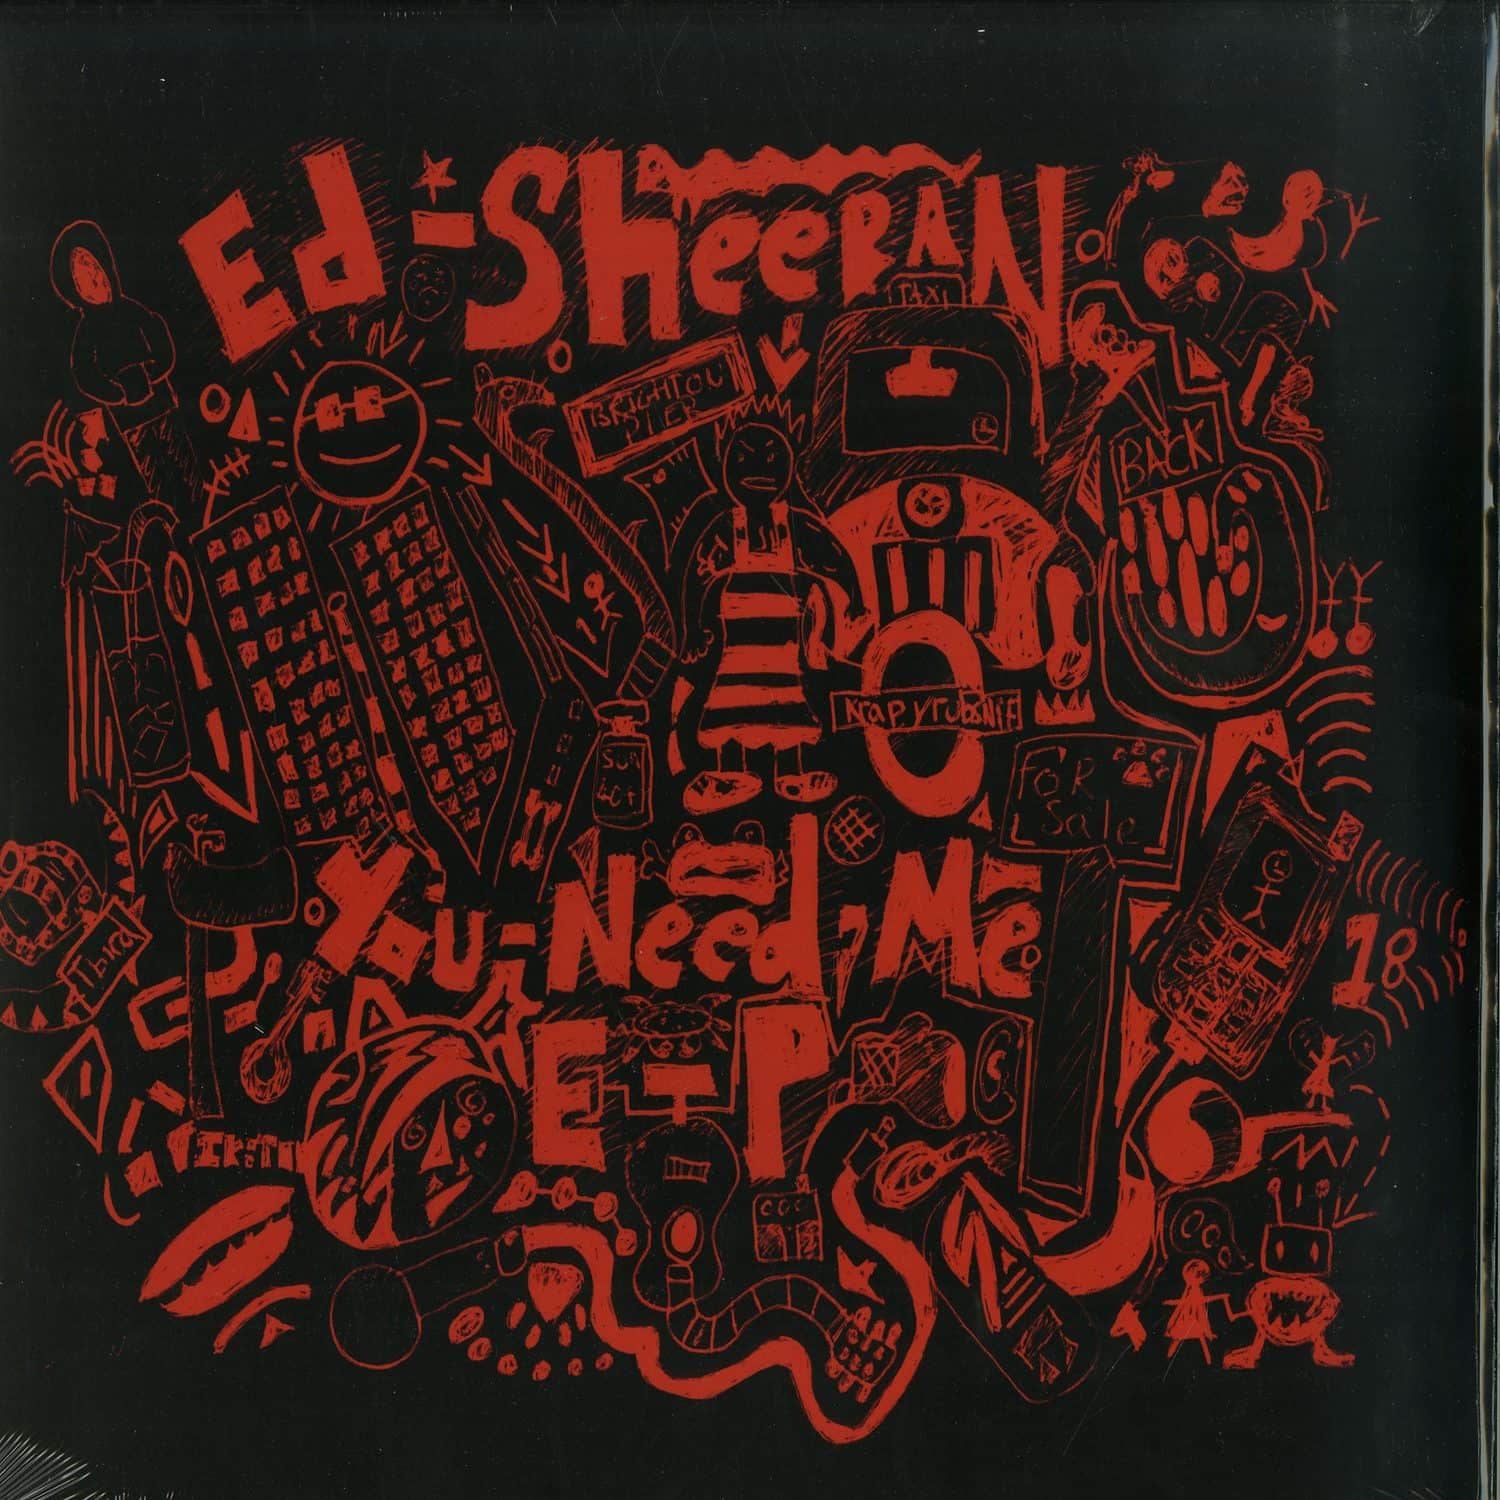 Ed Sheeran - YOU NEED ME